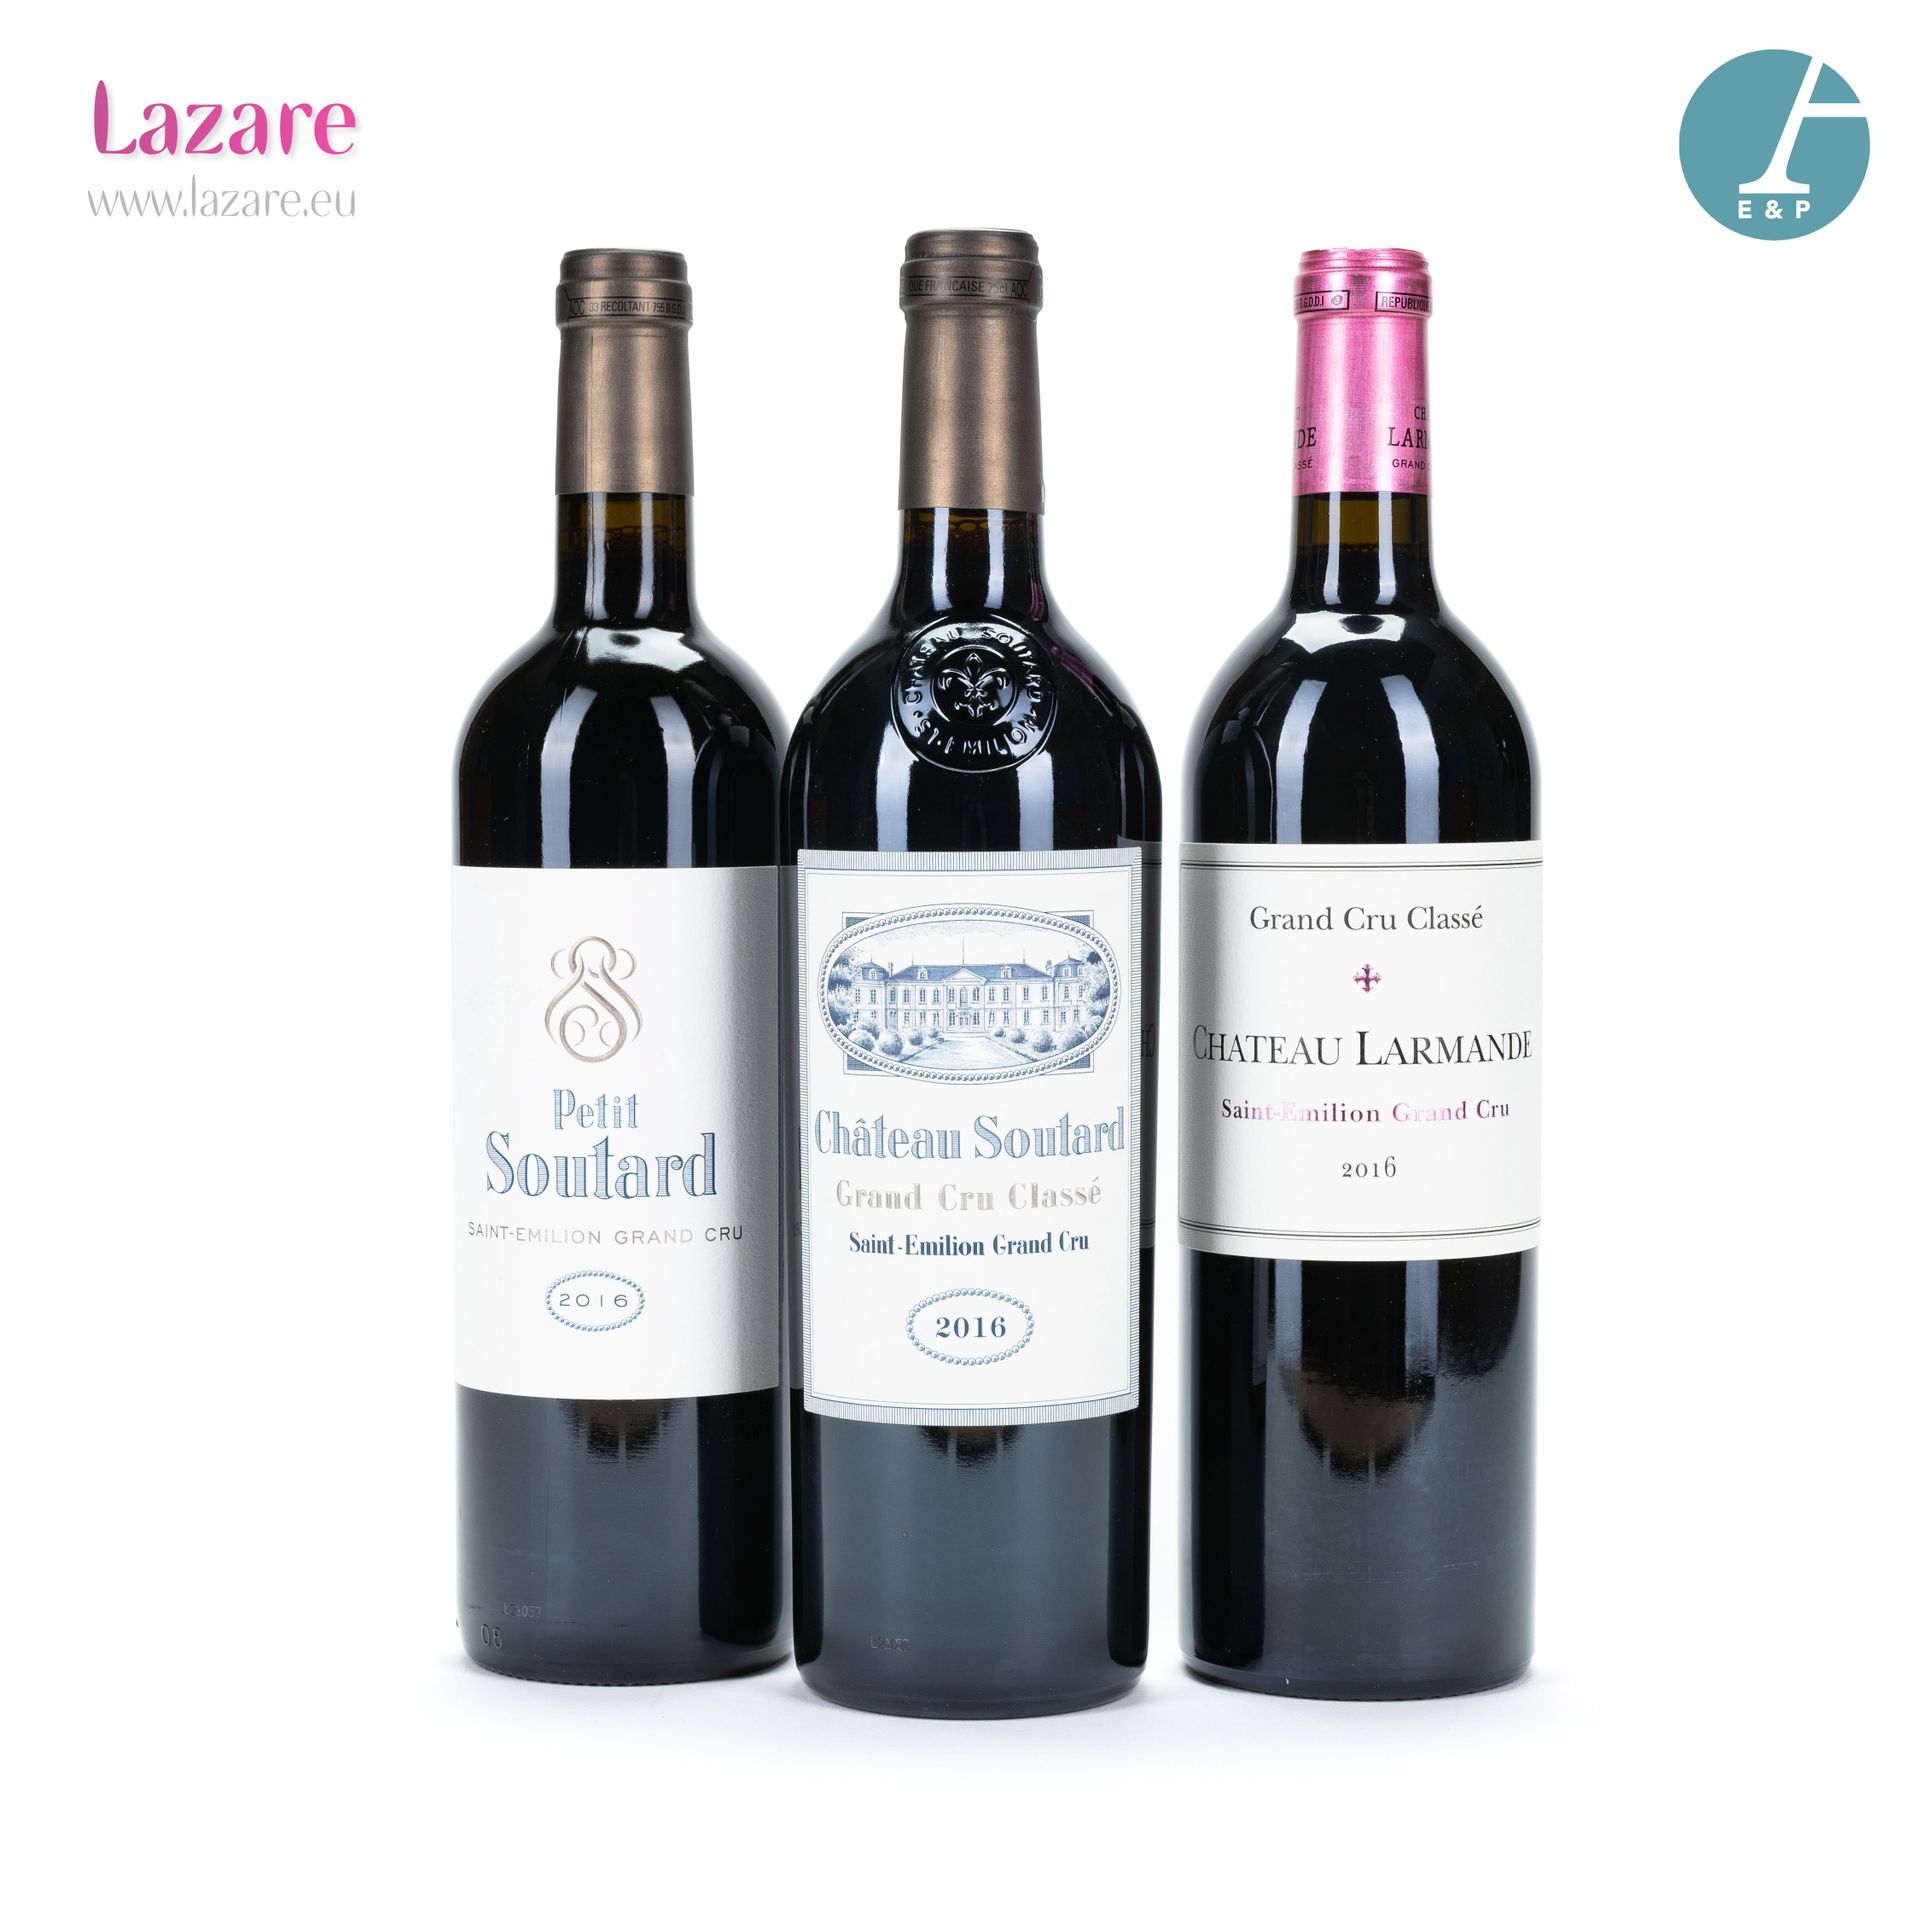 En provenance directe du château Lote de 3 botellas que incluyen : 

- 1 Botella&hellip;